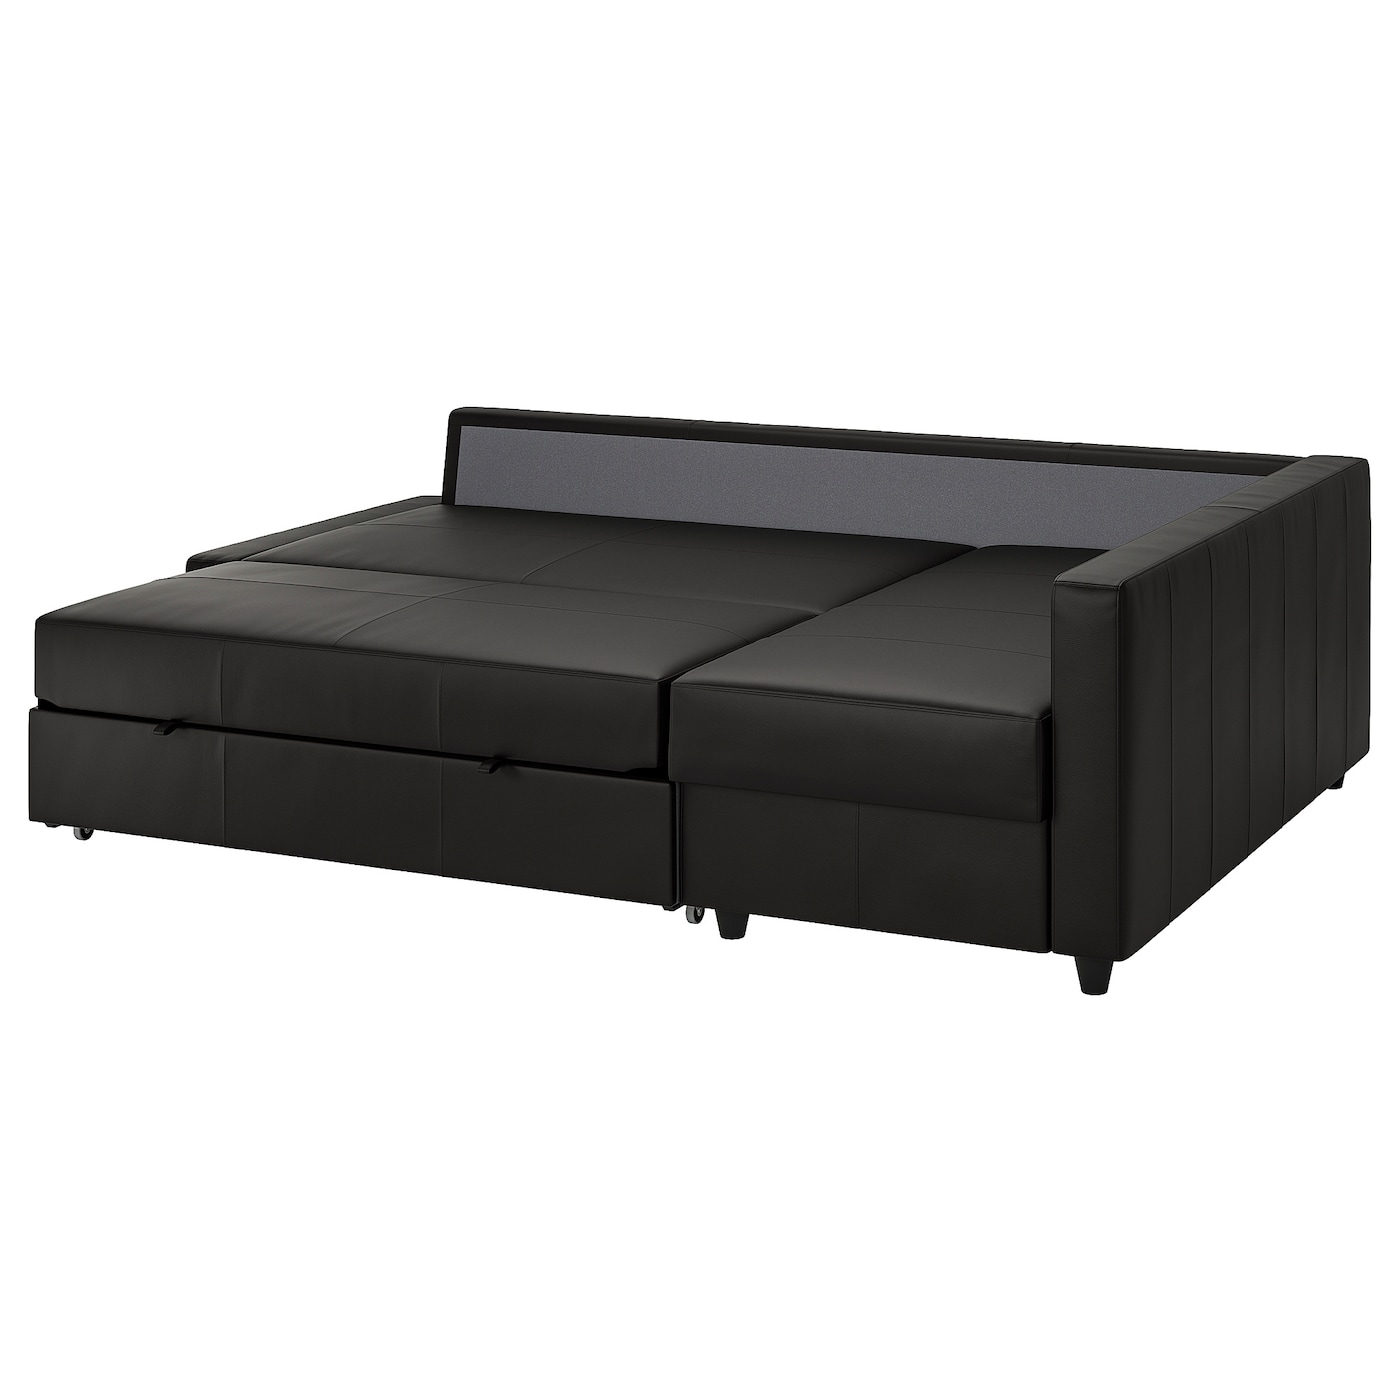 американский ретро диван европейский одноместный диван диван бар офисный диван для кофейни ФРИХЕТЕН Угловой диван-кровать + место для хранения, Бомстад черный FRIHETEN IKEA